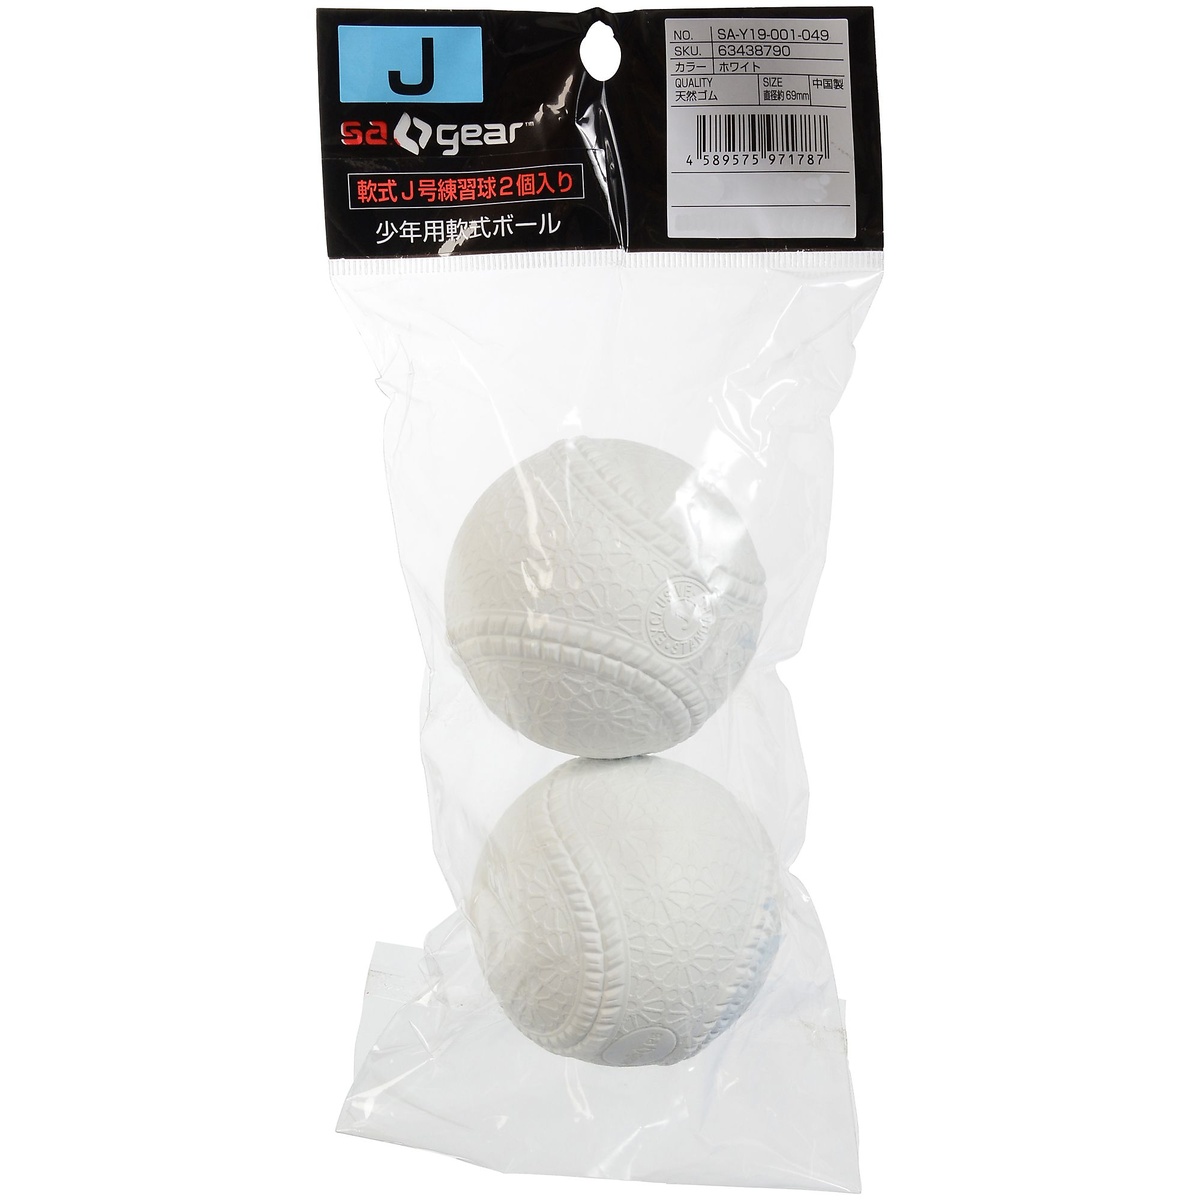 エスエーギア 野球 軟式ボール 練習球 軟式J号練習球2P s.a.gear s.a.gear (エスエーギア) 軟式J号練習球2P 野球 軟式ボール 練習球 ジュニア 2個入 ホワイト SA-Y19-001-049